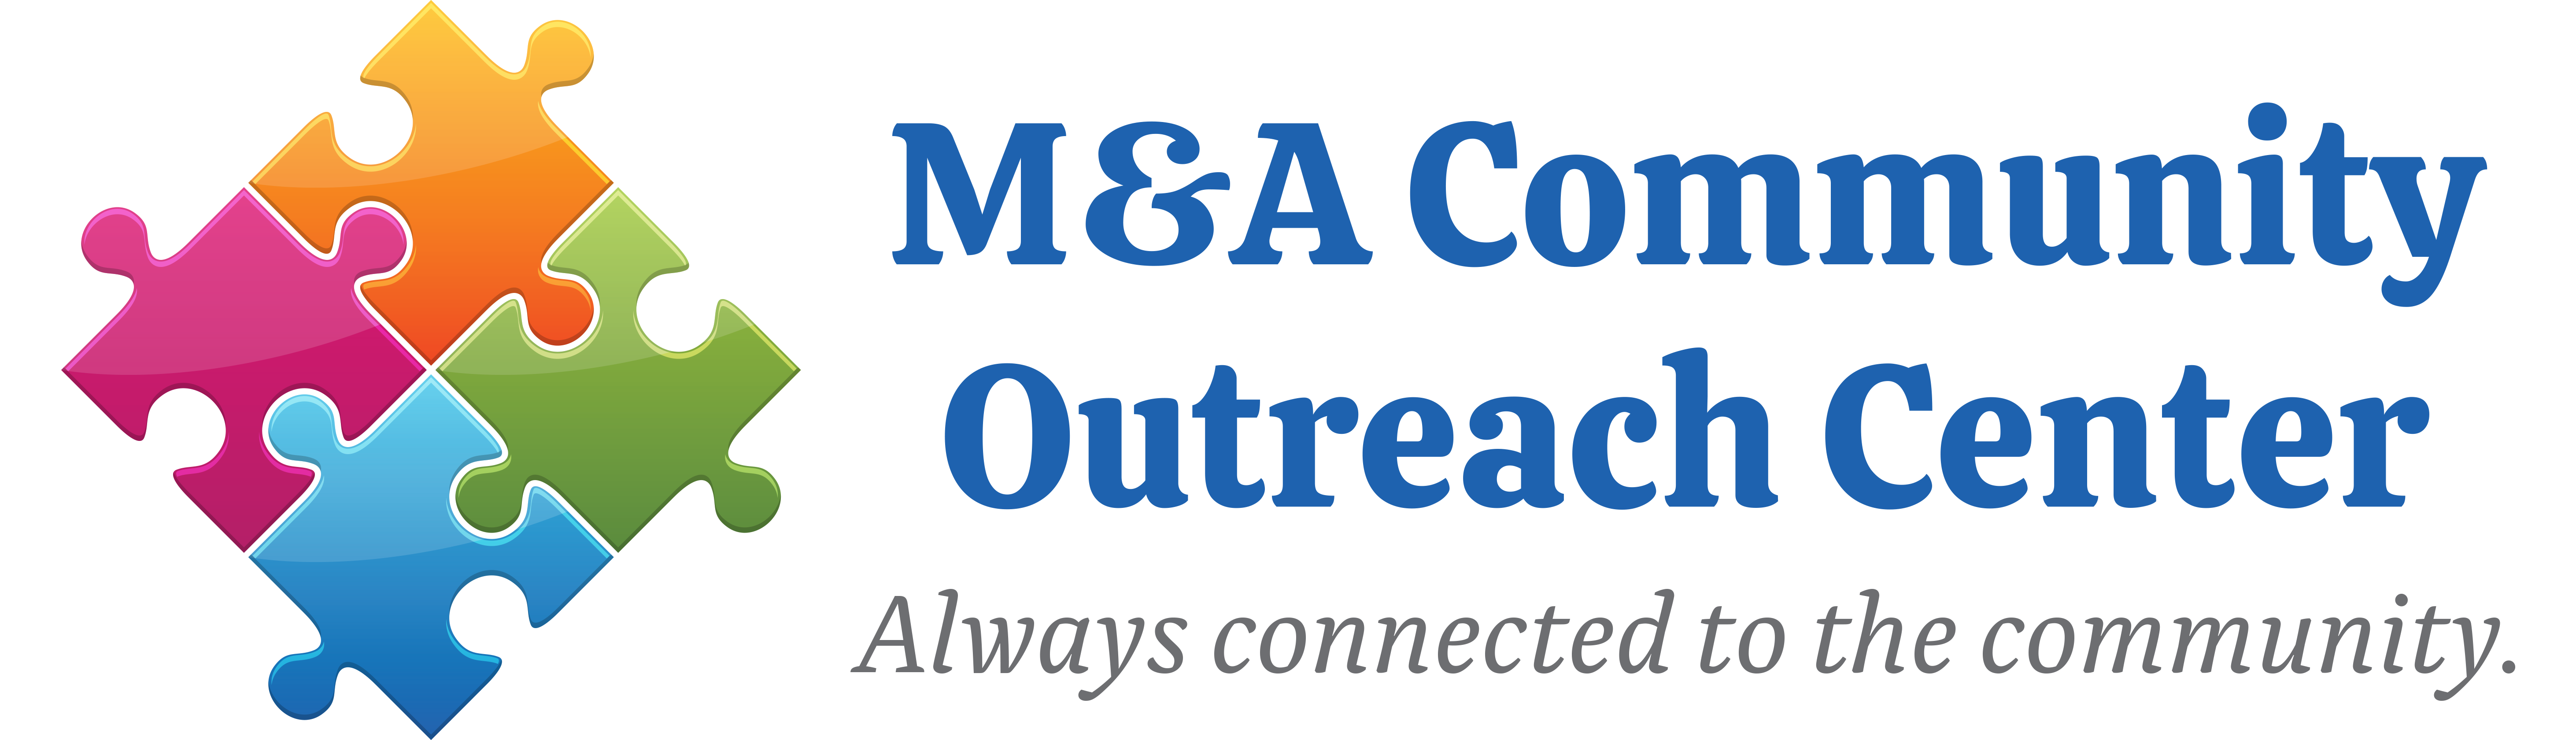 M&A-community-outreach-center